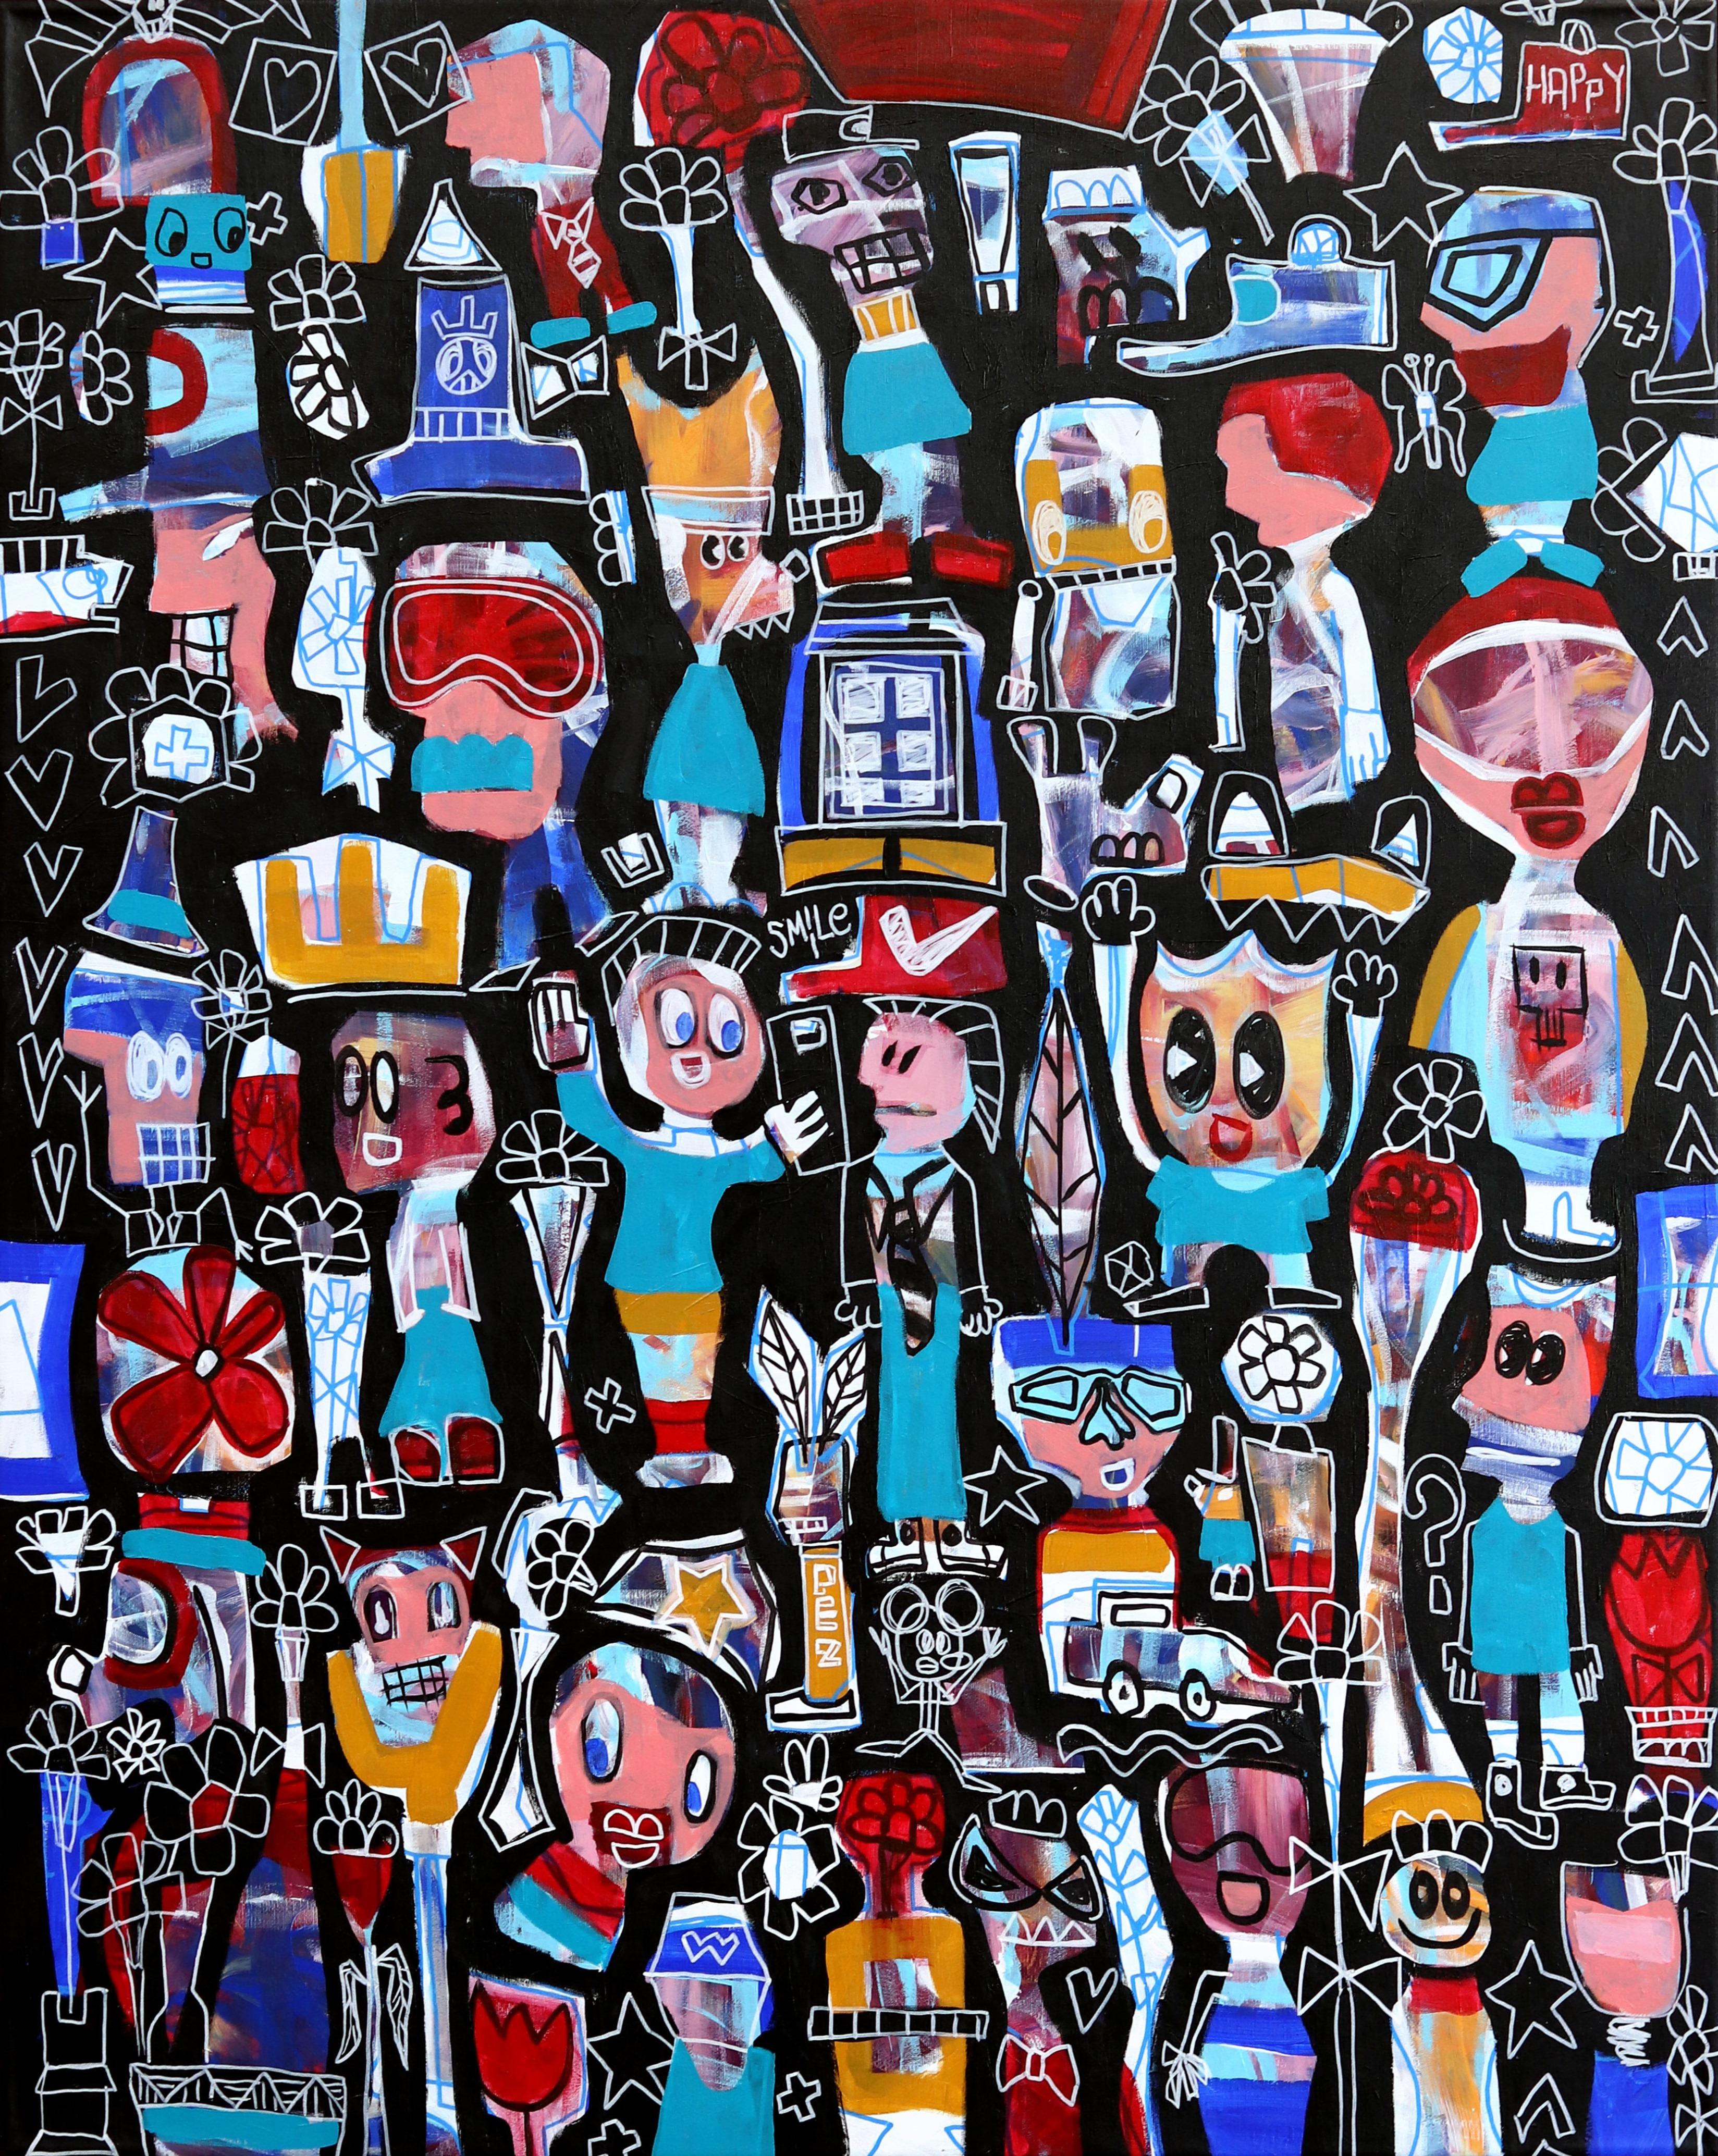 Hands Up - Freunde und Familie Neoexpressionistisches großes Gemälde auf Leinwand